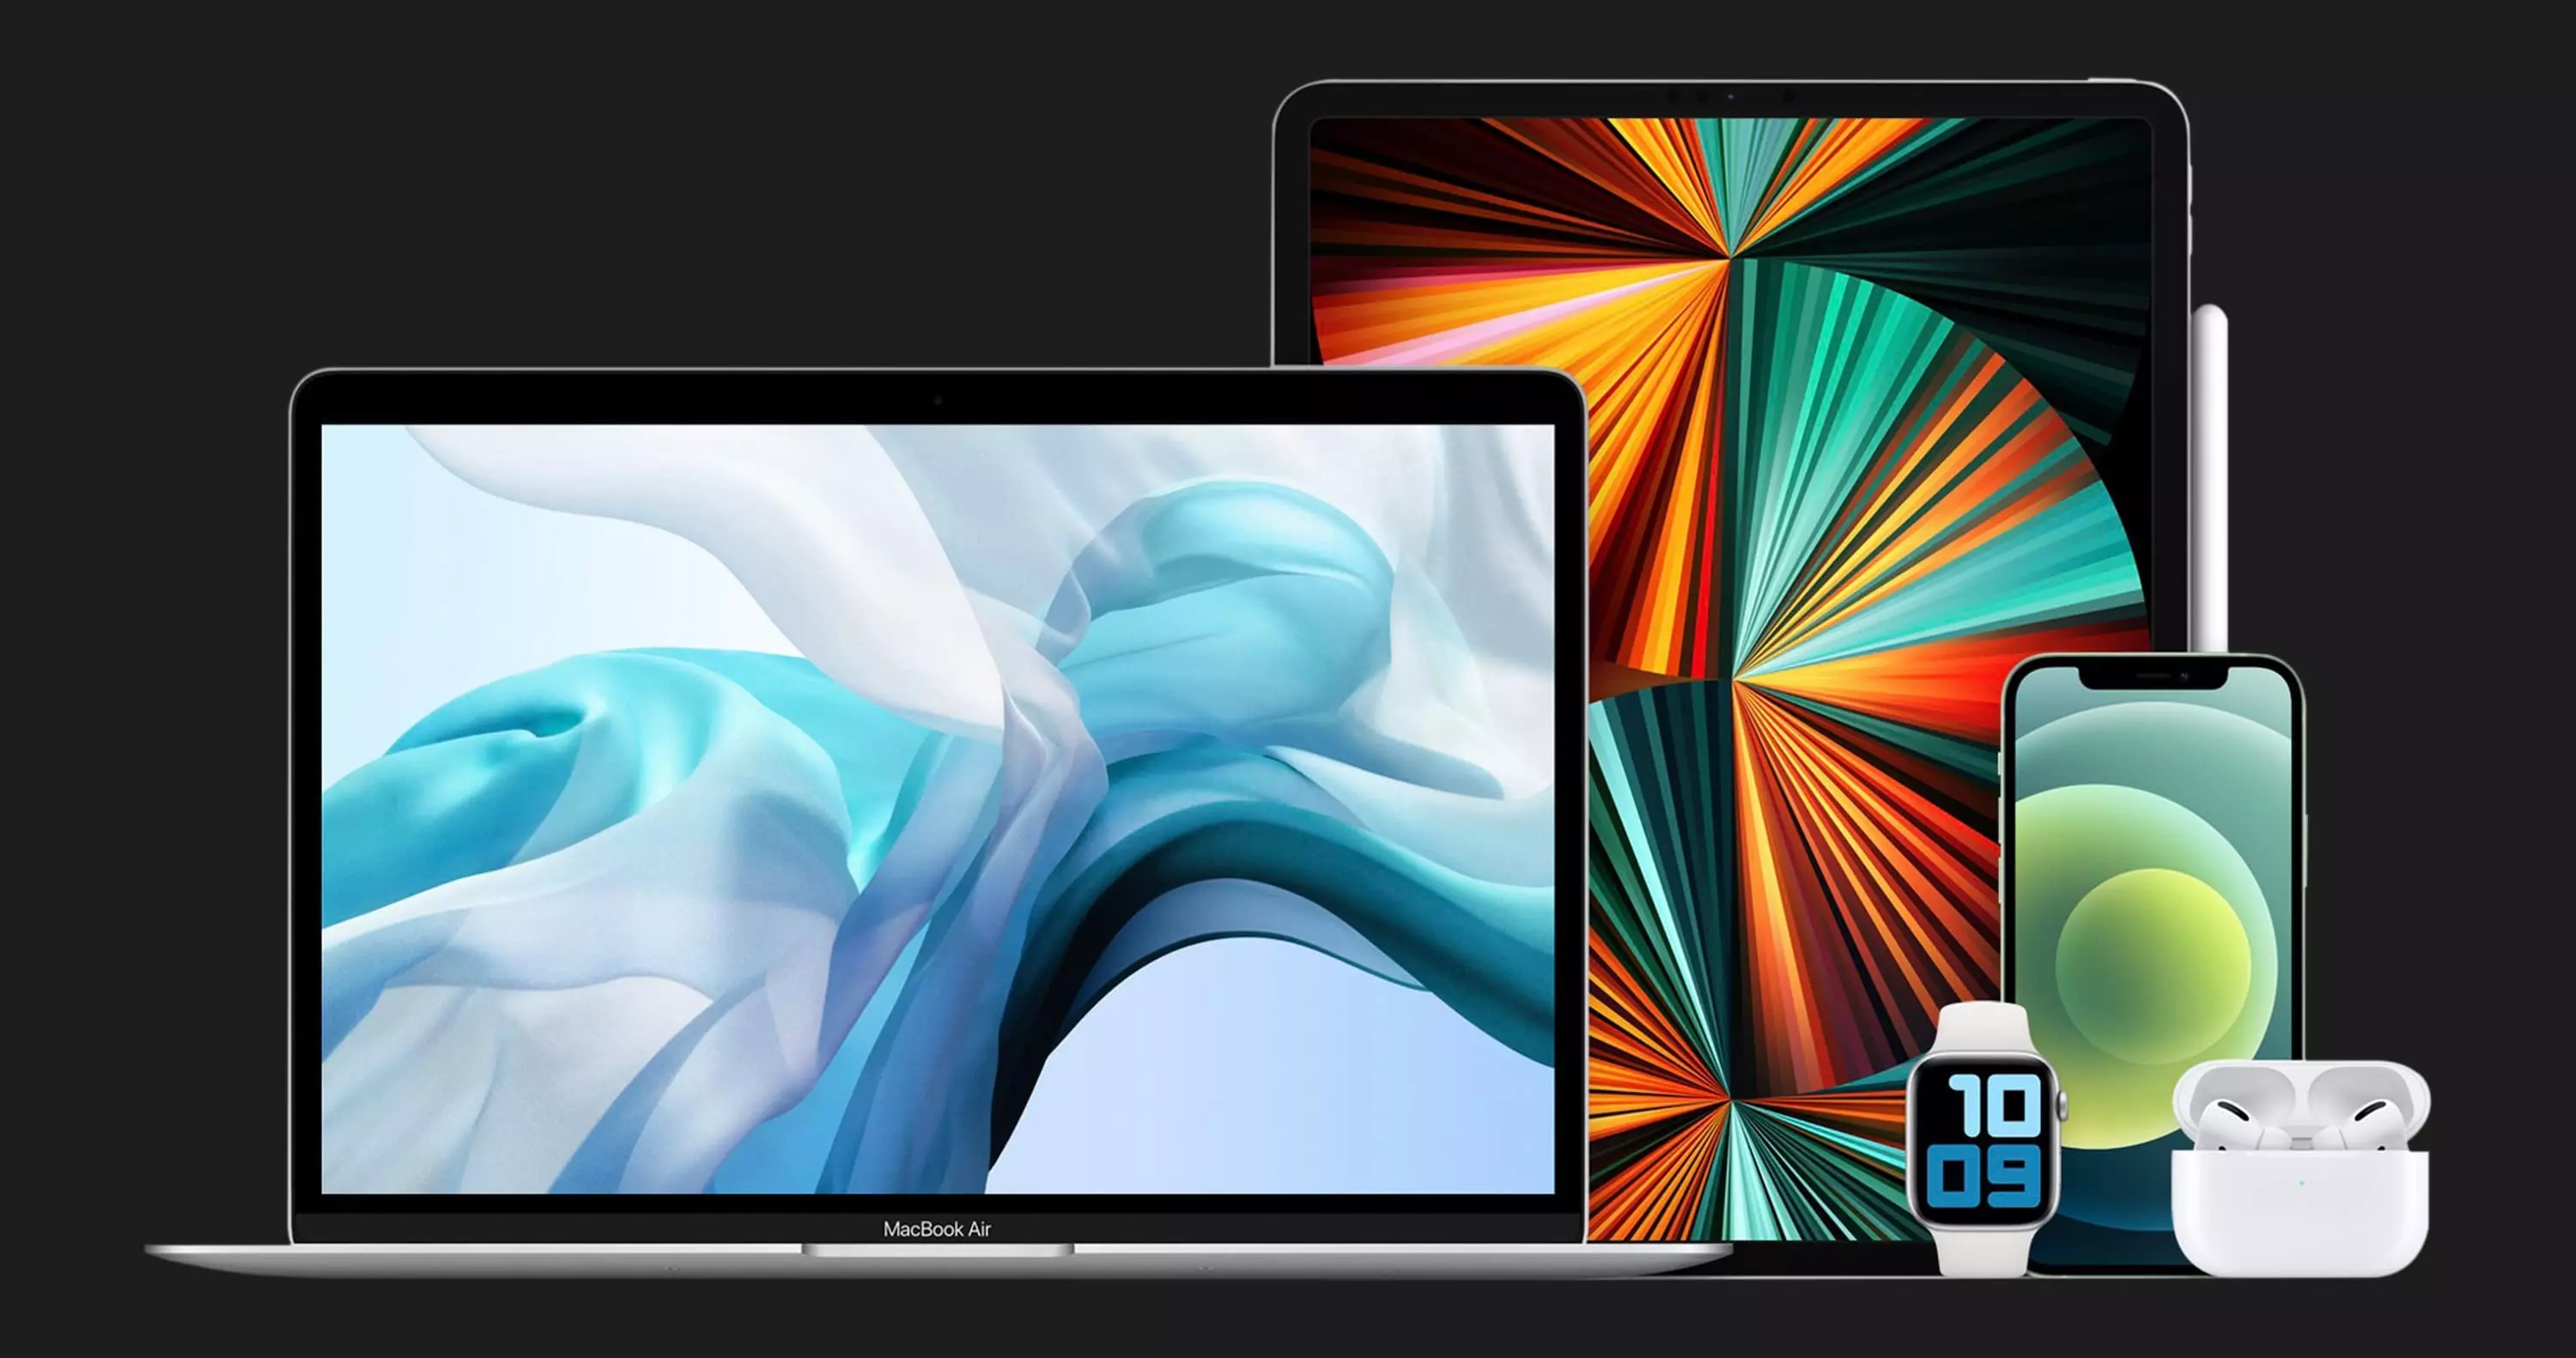 б/у Apple MacBook Air 13, 2019, Space Gray (256GB) (MVFJ2) (Идеальное состояние)